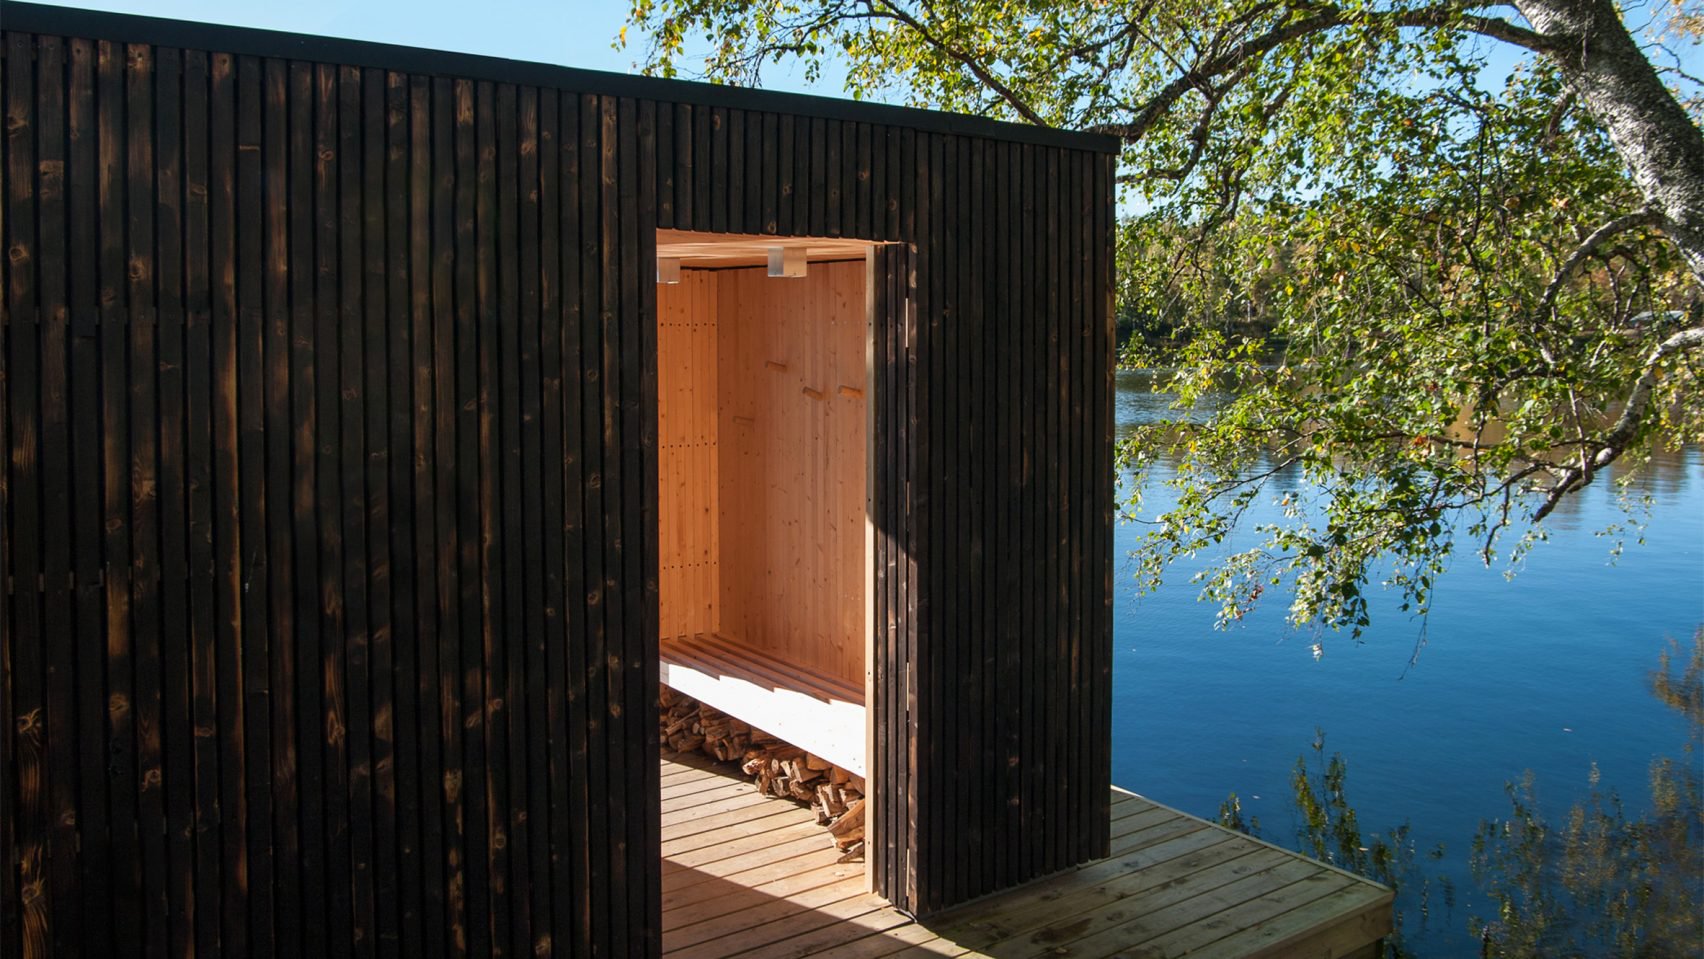 Göl üzerinde inşa edilen “yüzen sauna” kömürleştirilmiş ahşap kaplı